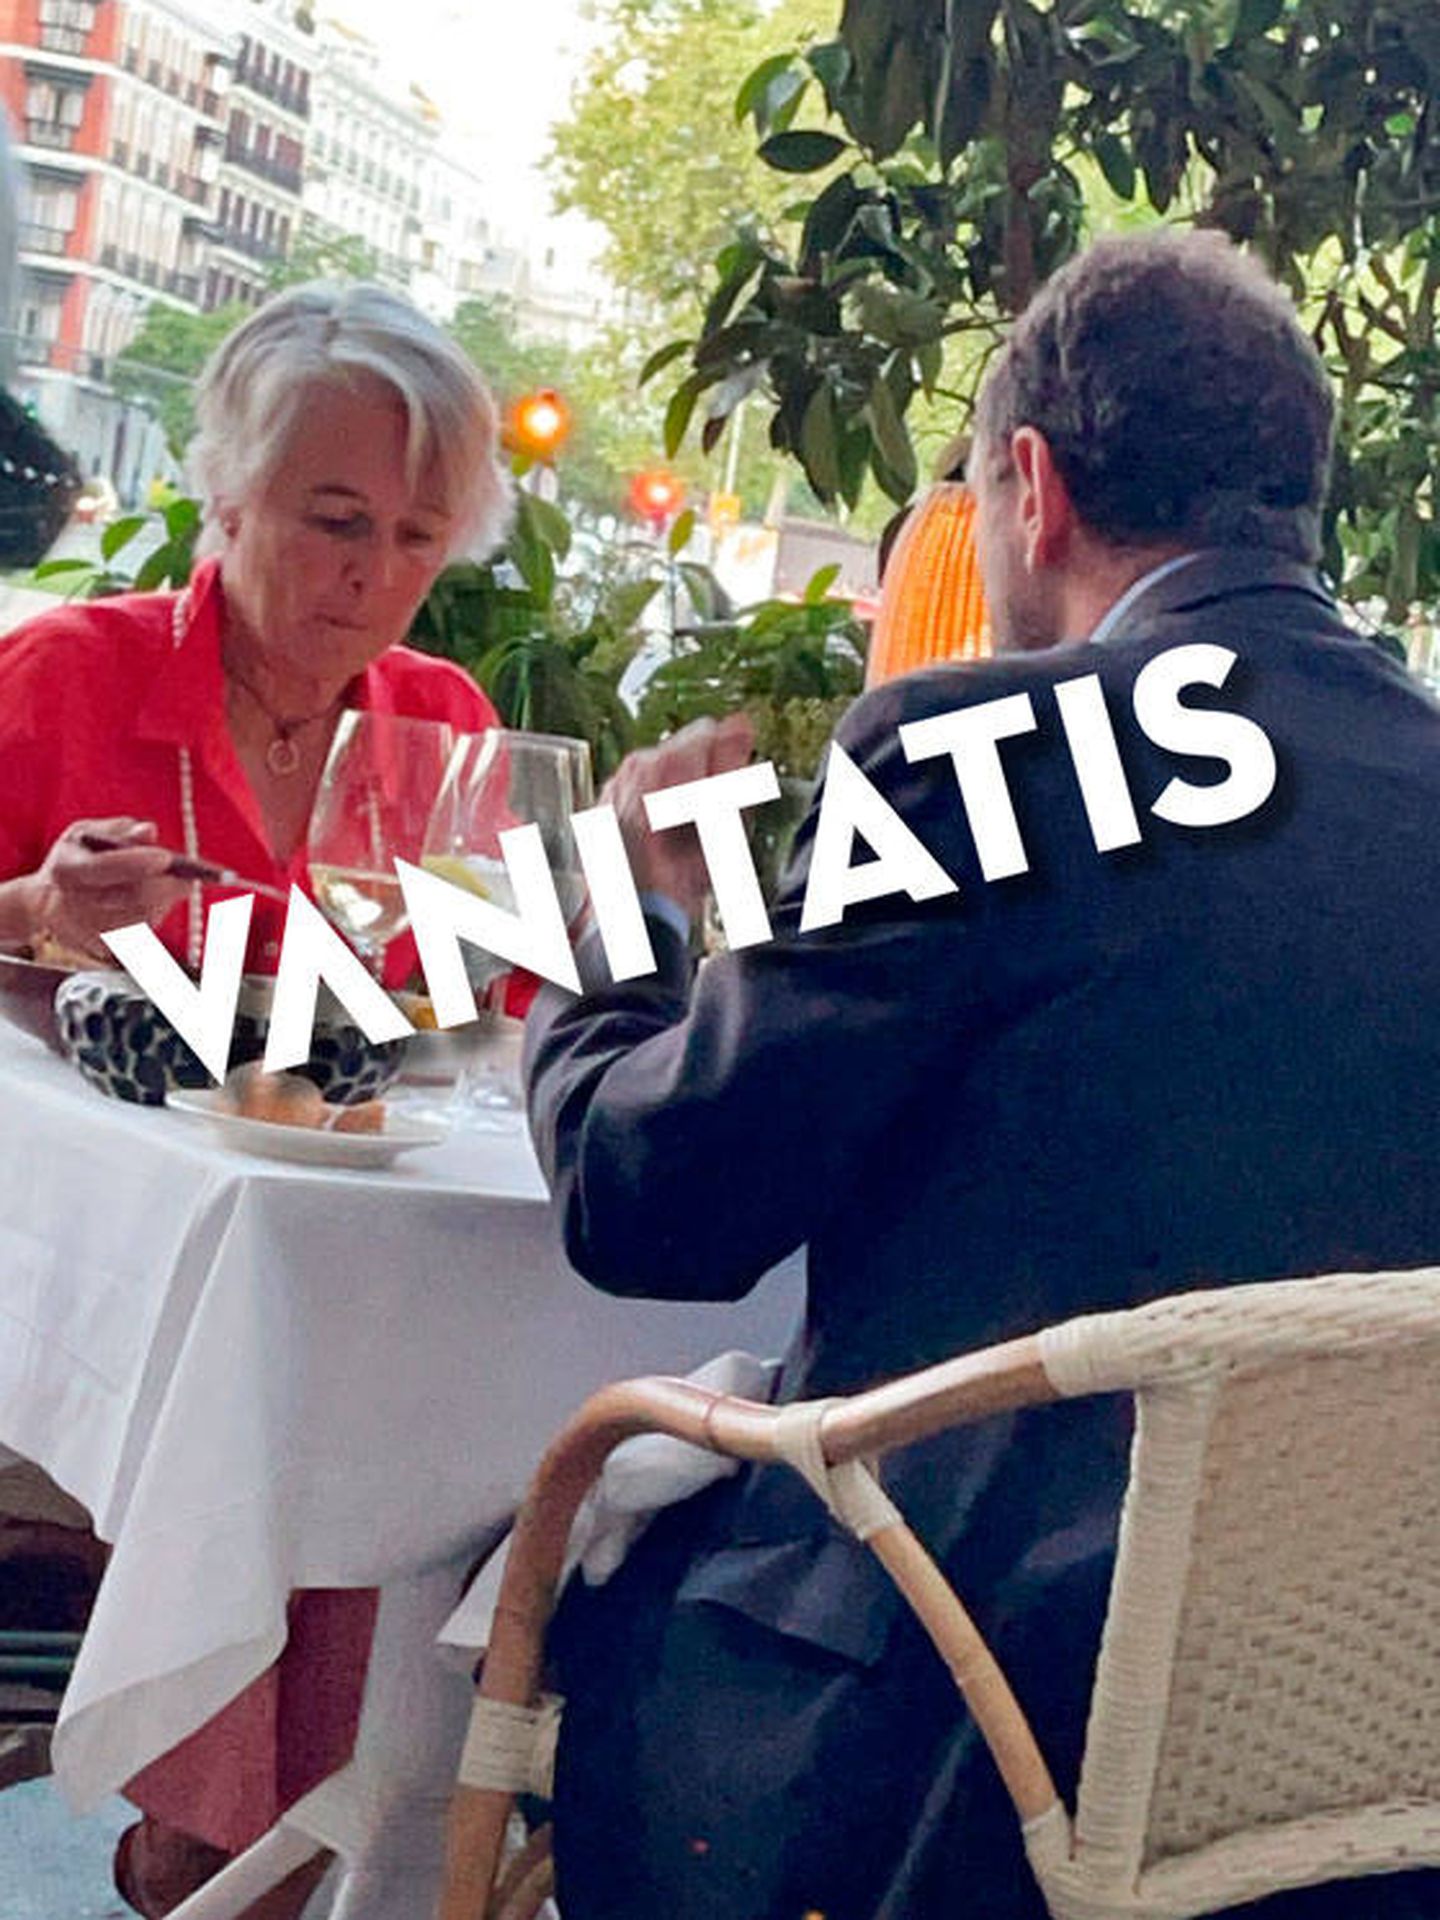 Una imagen de la cena entre Mónica Ridruejo y Luis Gasset.(Vanitatis)